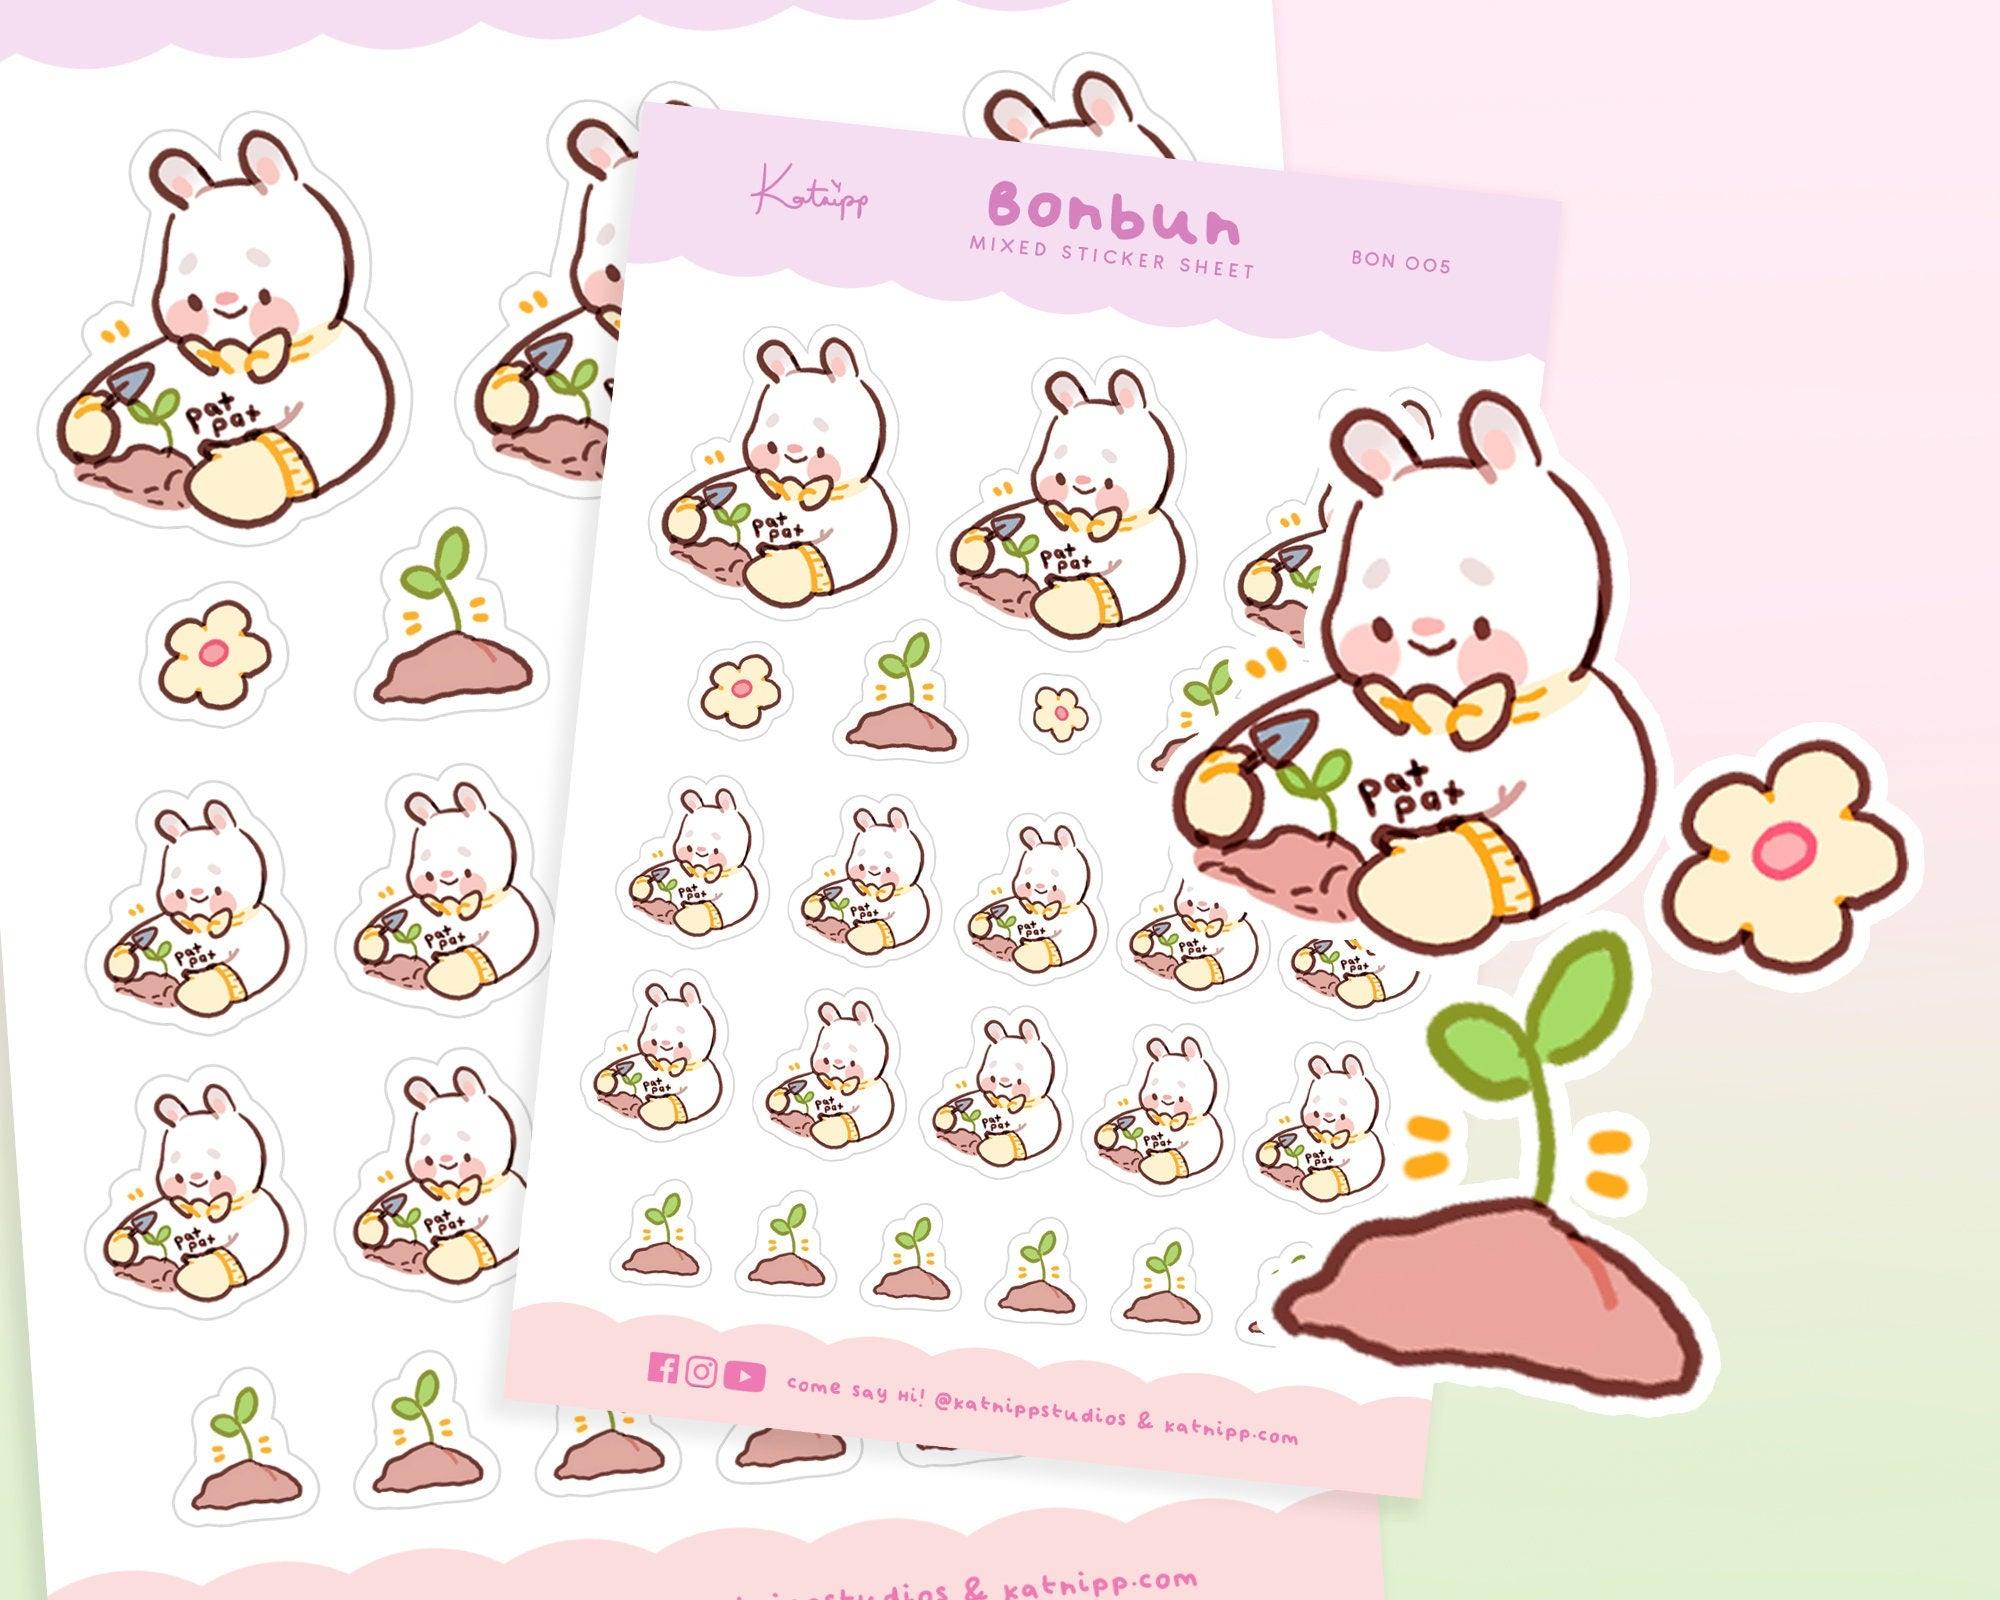 Bonbun's Spring Gardening Pastel Sticker Sheet - BON004